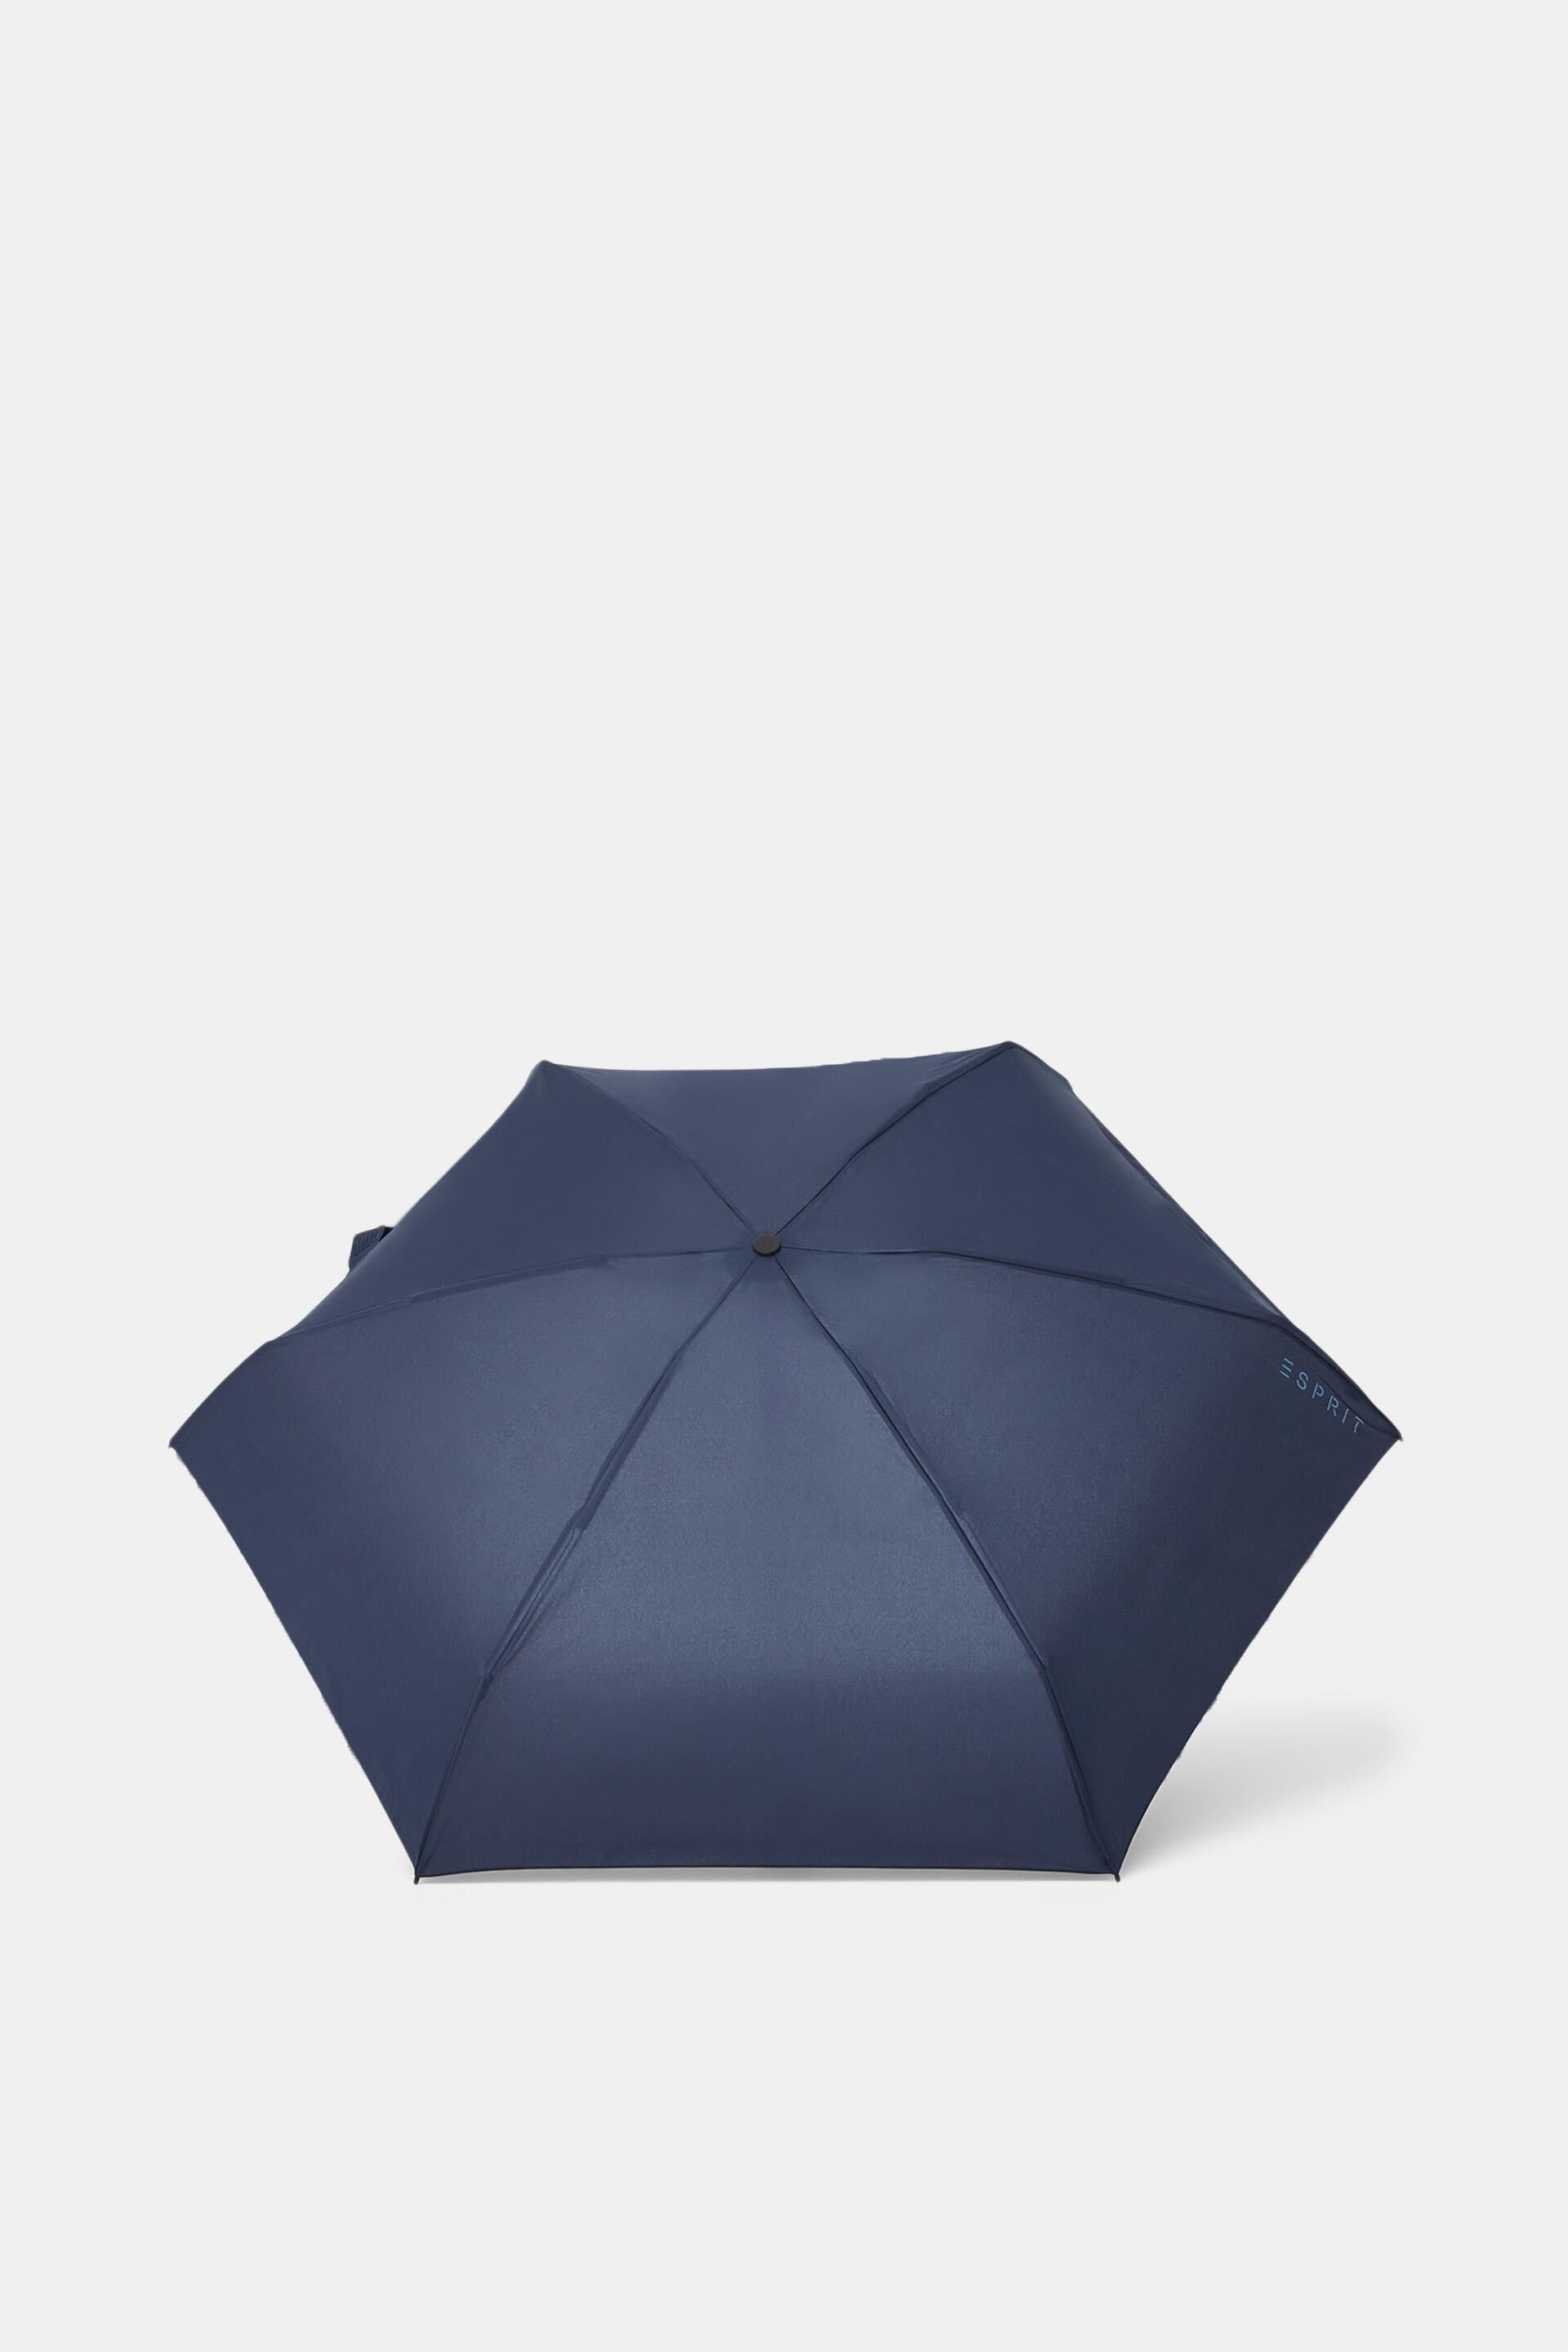 Esprit pocket Plain umbrella mini